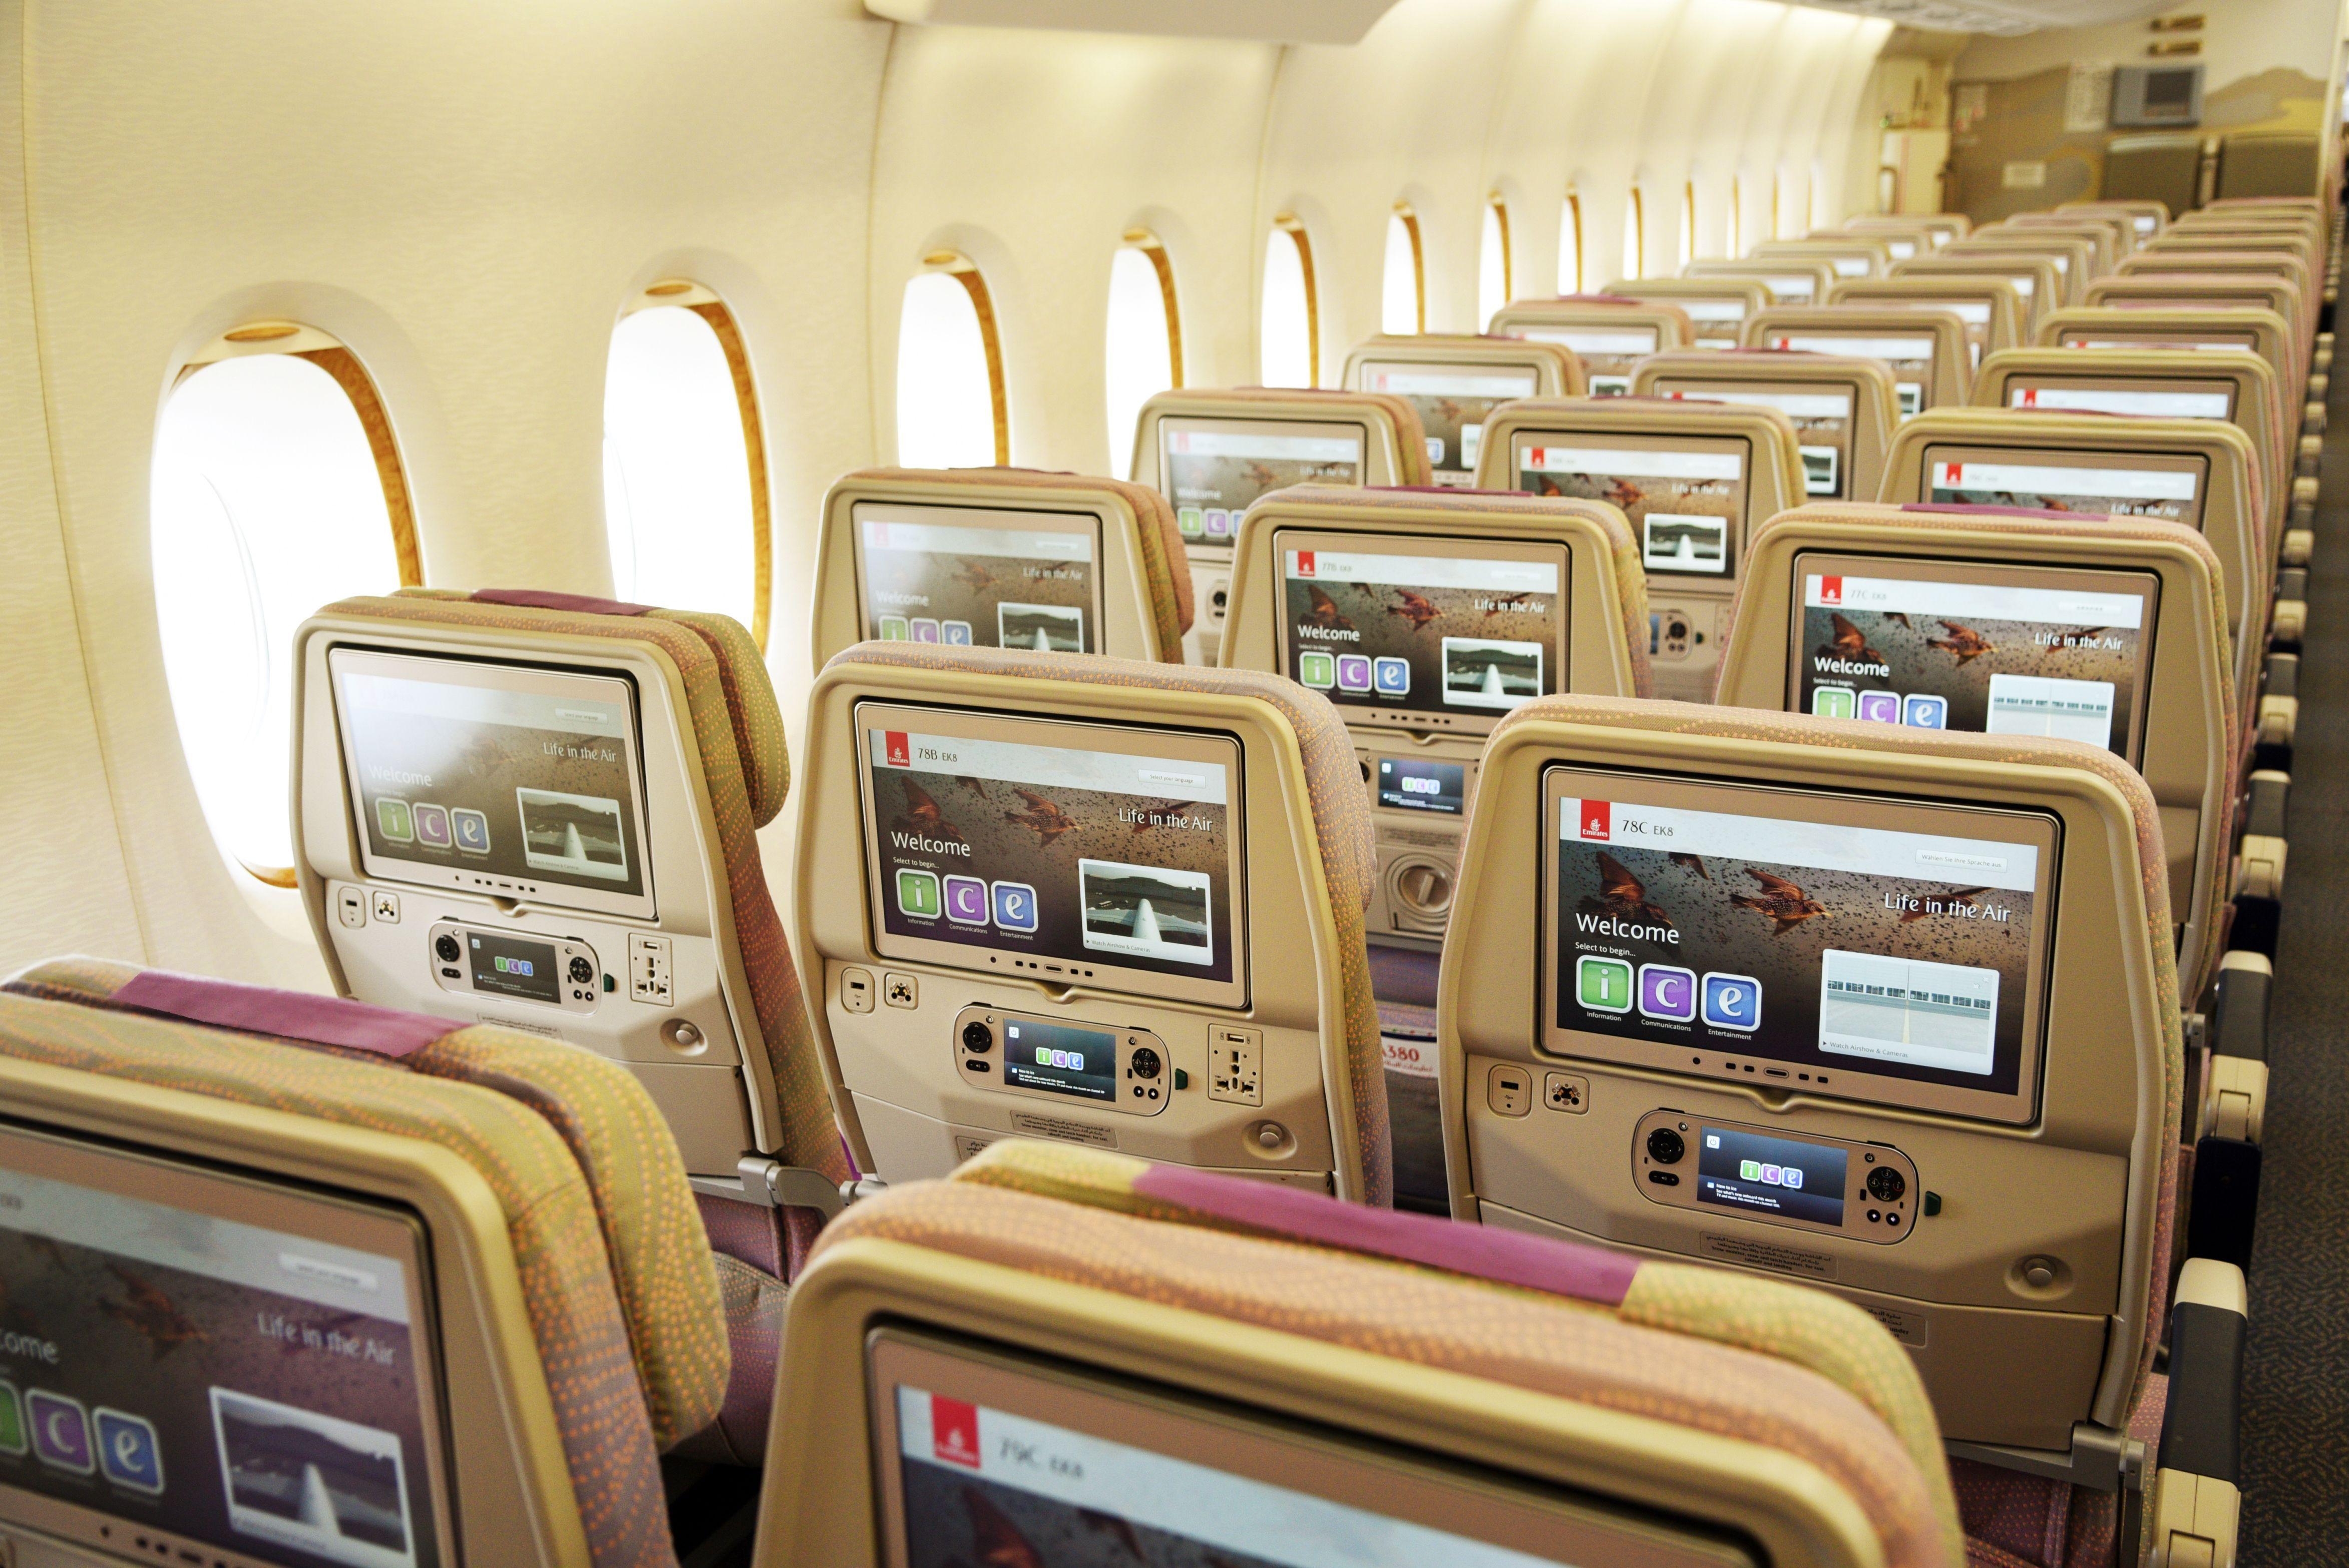 Сайт эмиратские авиалинии. Эмират аэролинсэ. Emirates Airlines. Арабские авиалинии Emirates. Emirates Airlines a380 Inflight.